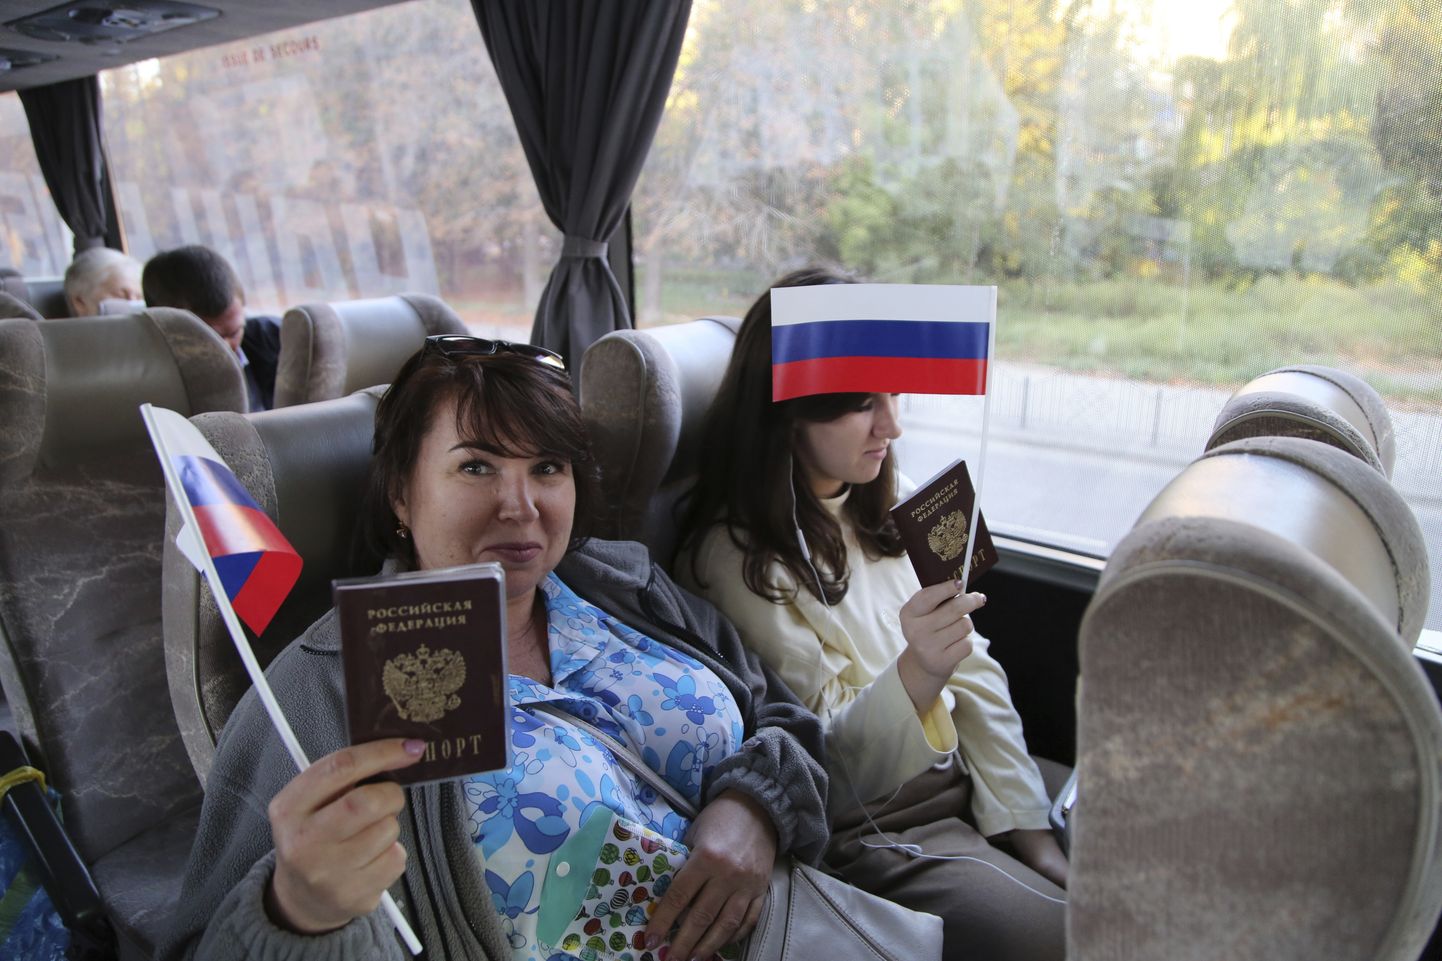 Donetskis elavad Venemaa kodanikud lehvitamas Venemaa lippudega ja näitamas Vene passe 17. septembril 2021, olles teel Venemaale, kus nad läksid andma oma häält parlamendivalimistel.